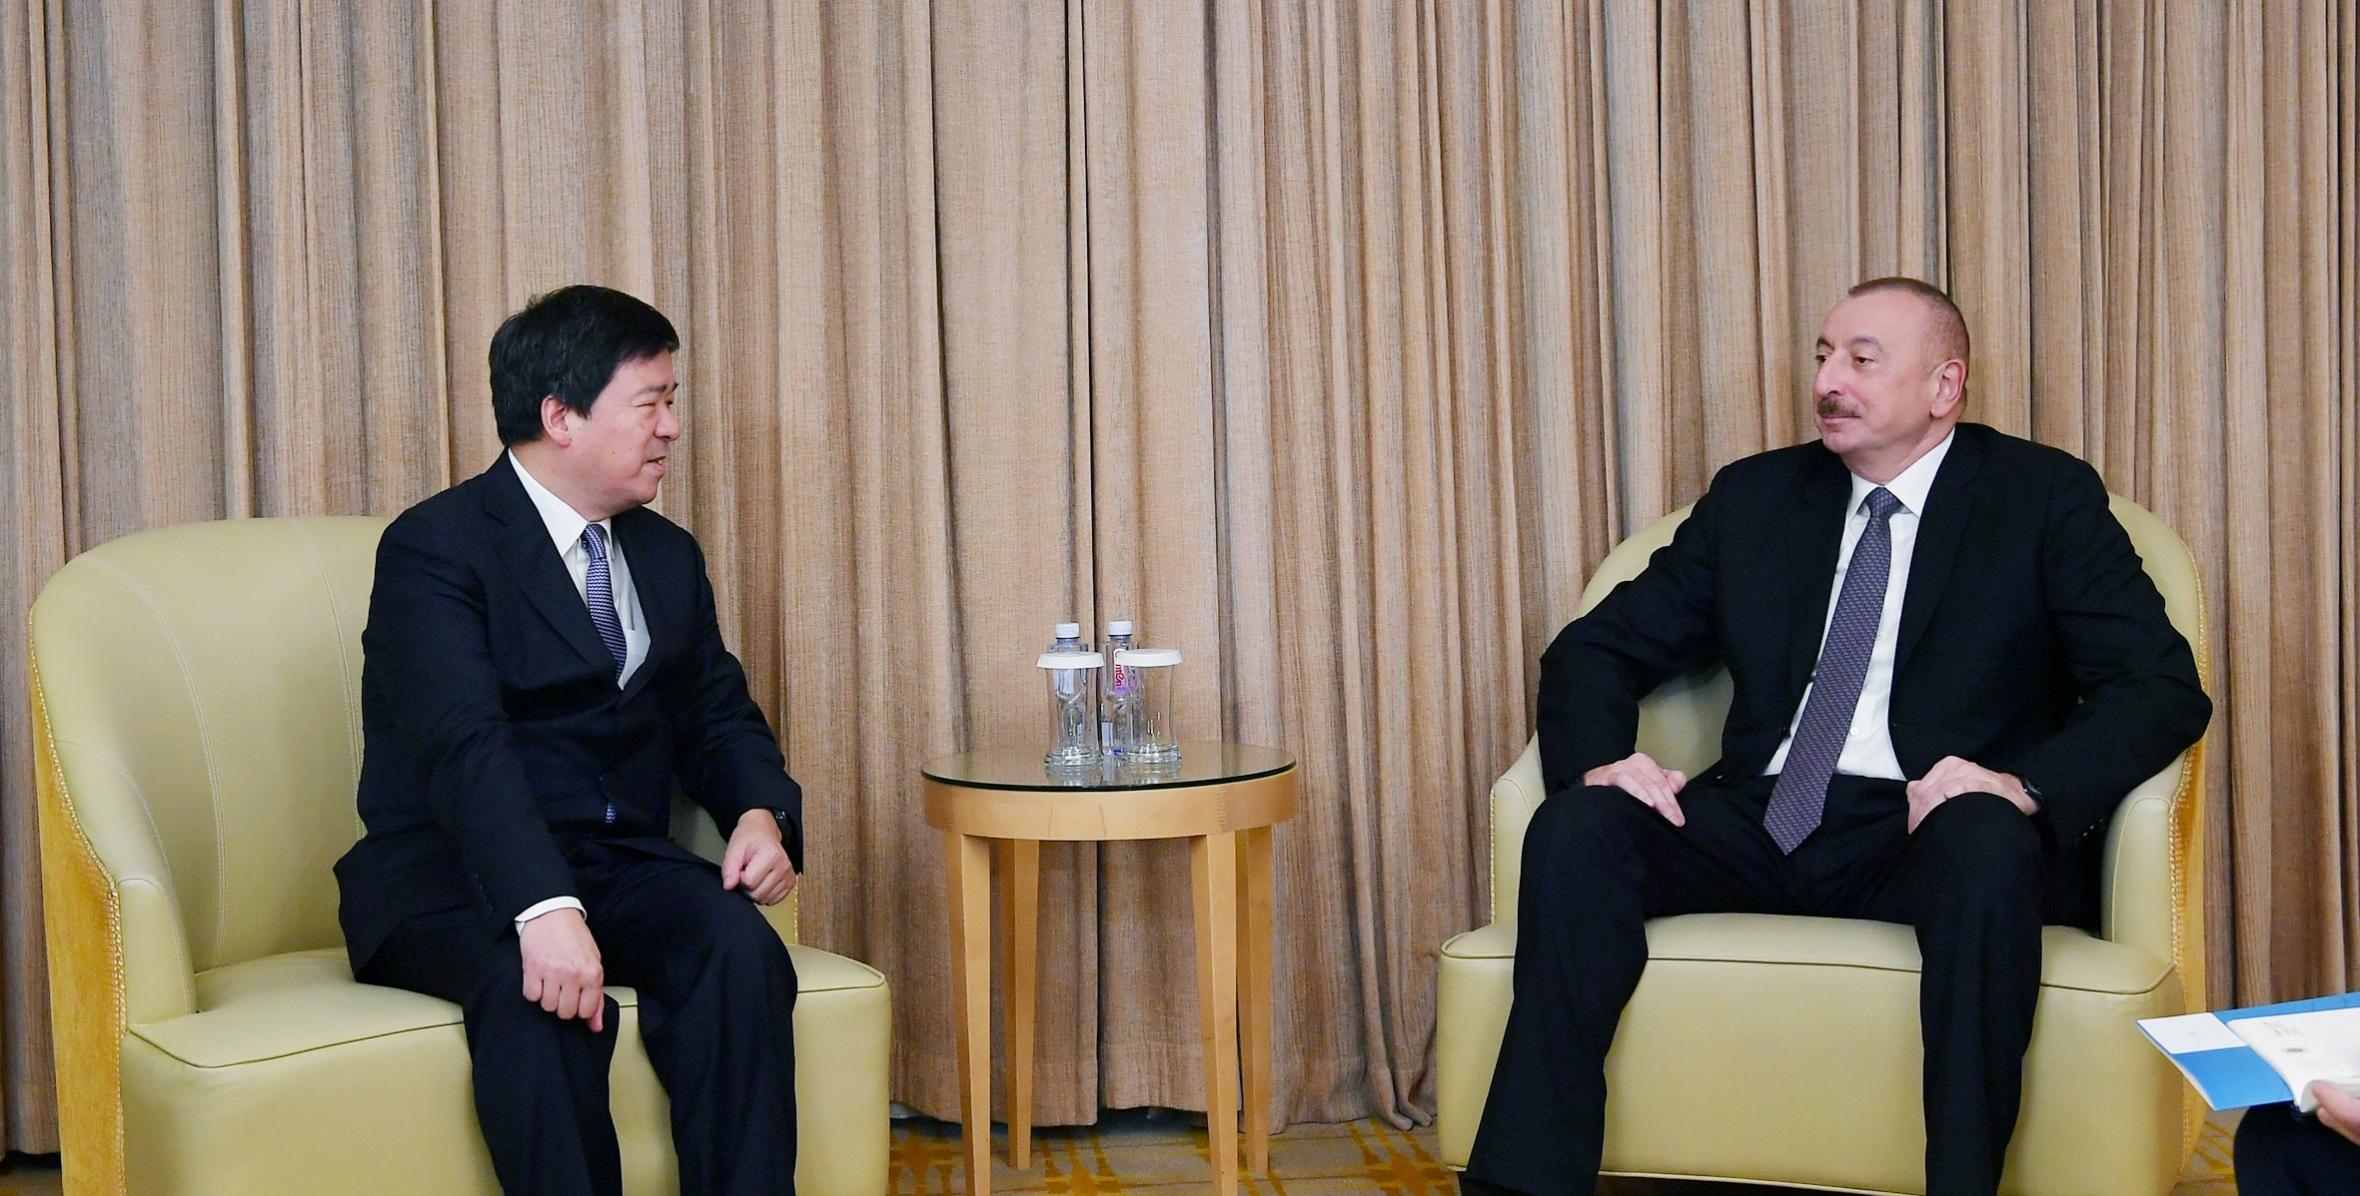 Ilham Aliyev met with chairman of ZTE Corporation in Beijing